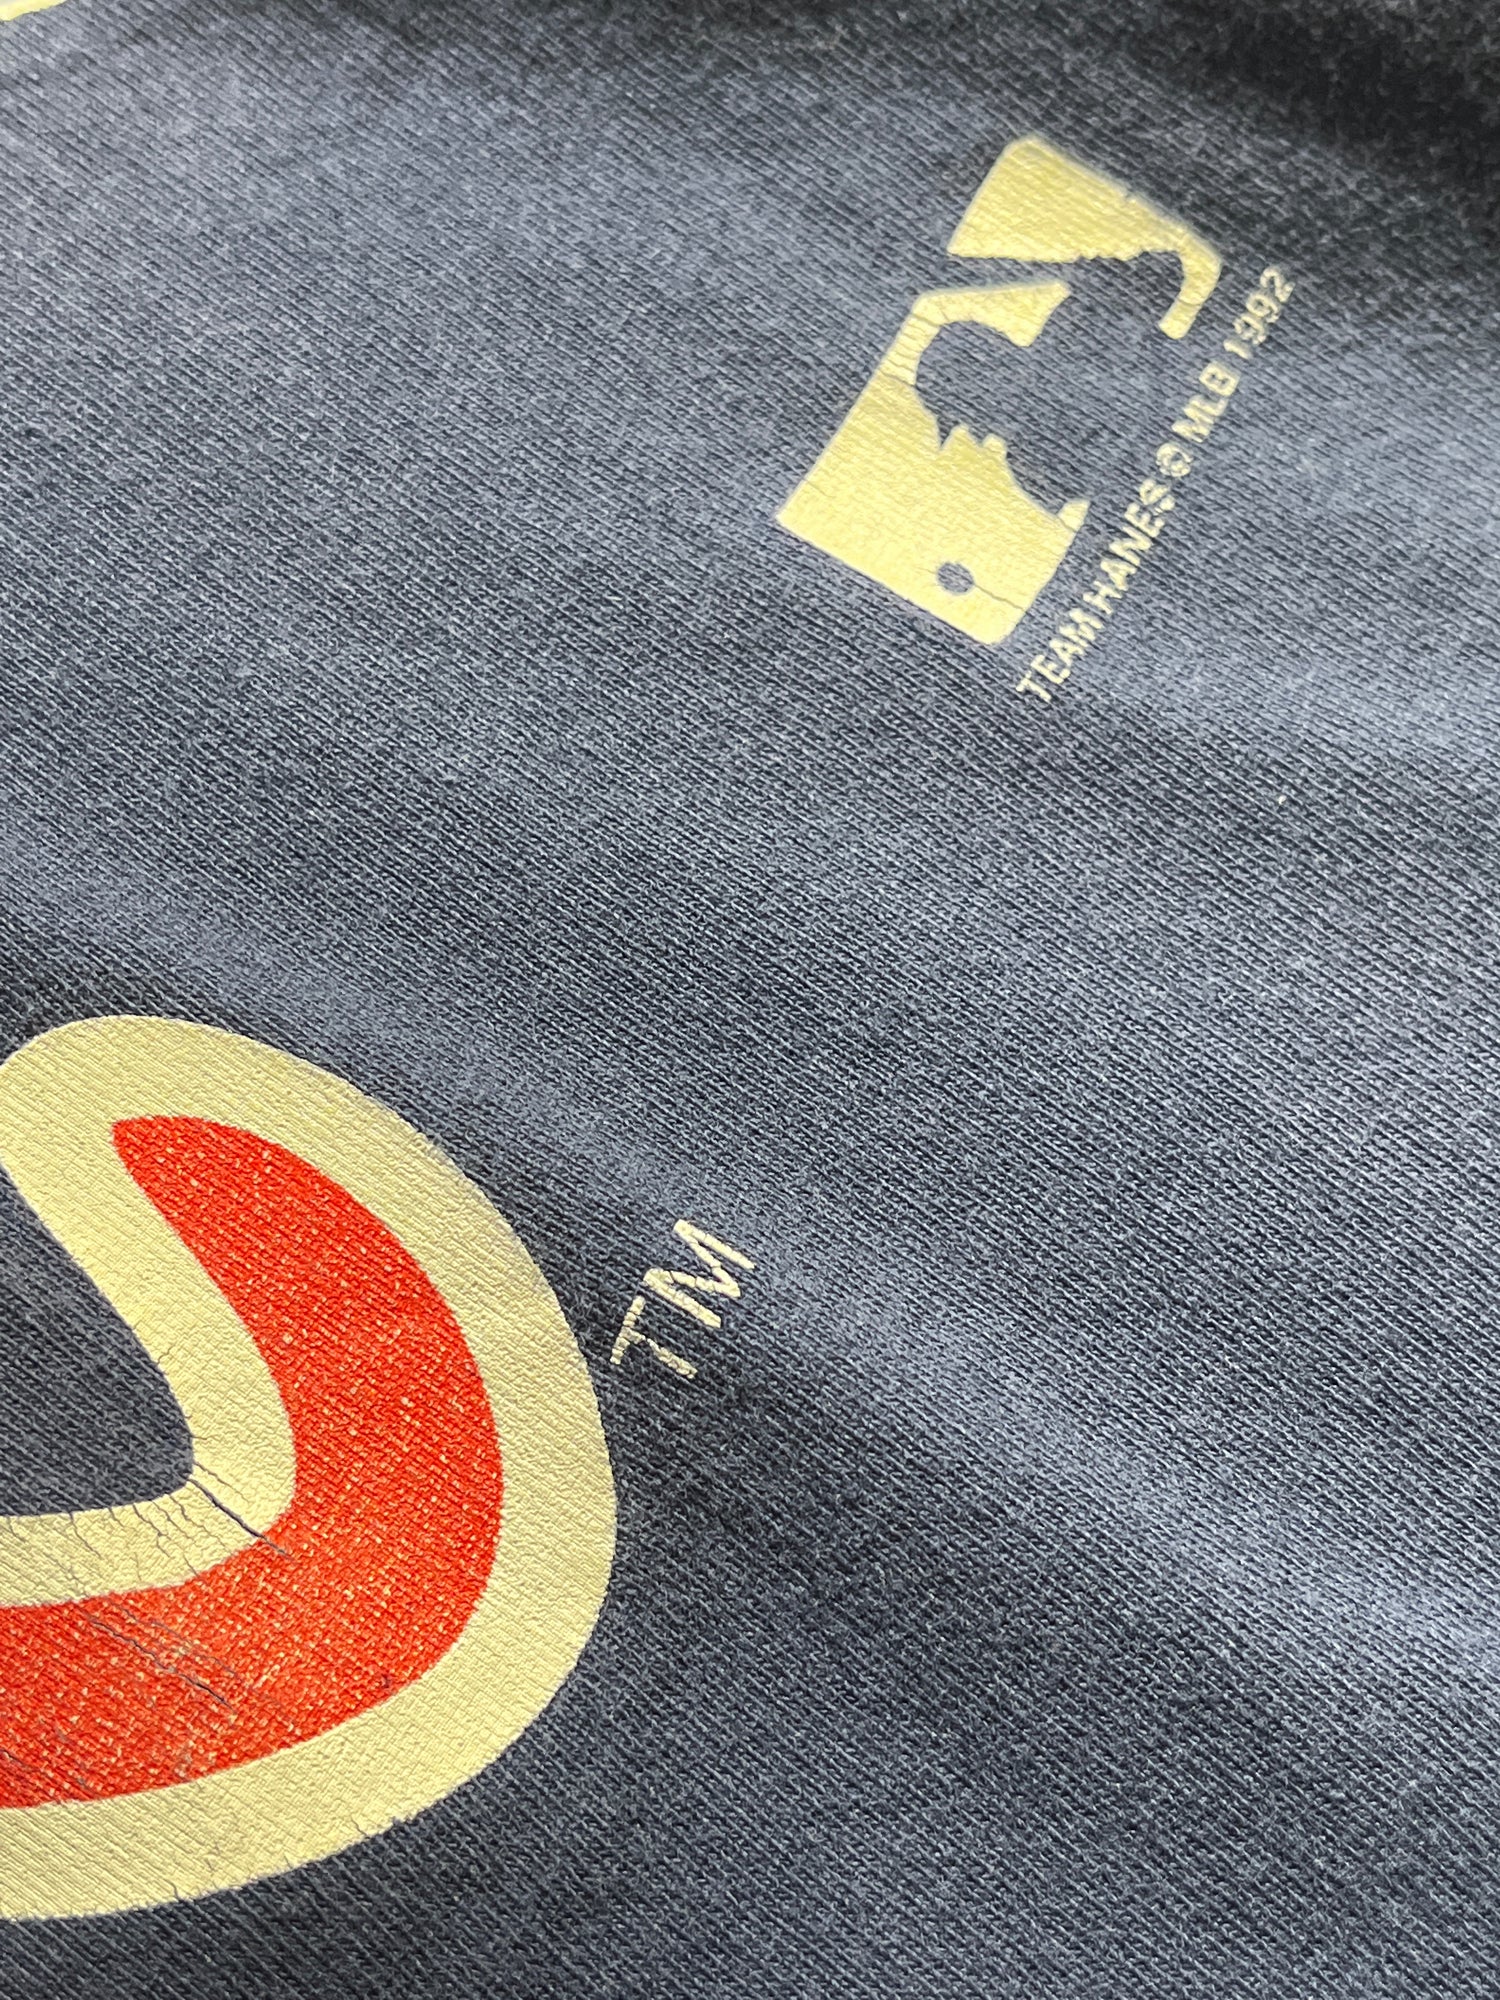 Glorydays Fine Goods Vintage Atlanta Braves T-Shirt MLB Big Logo 1992